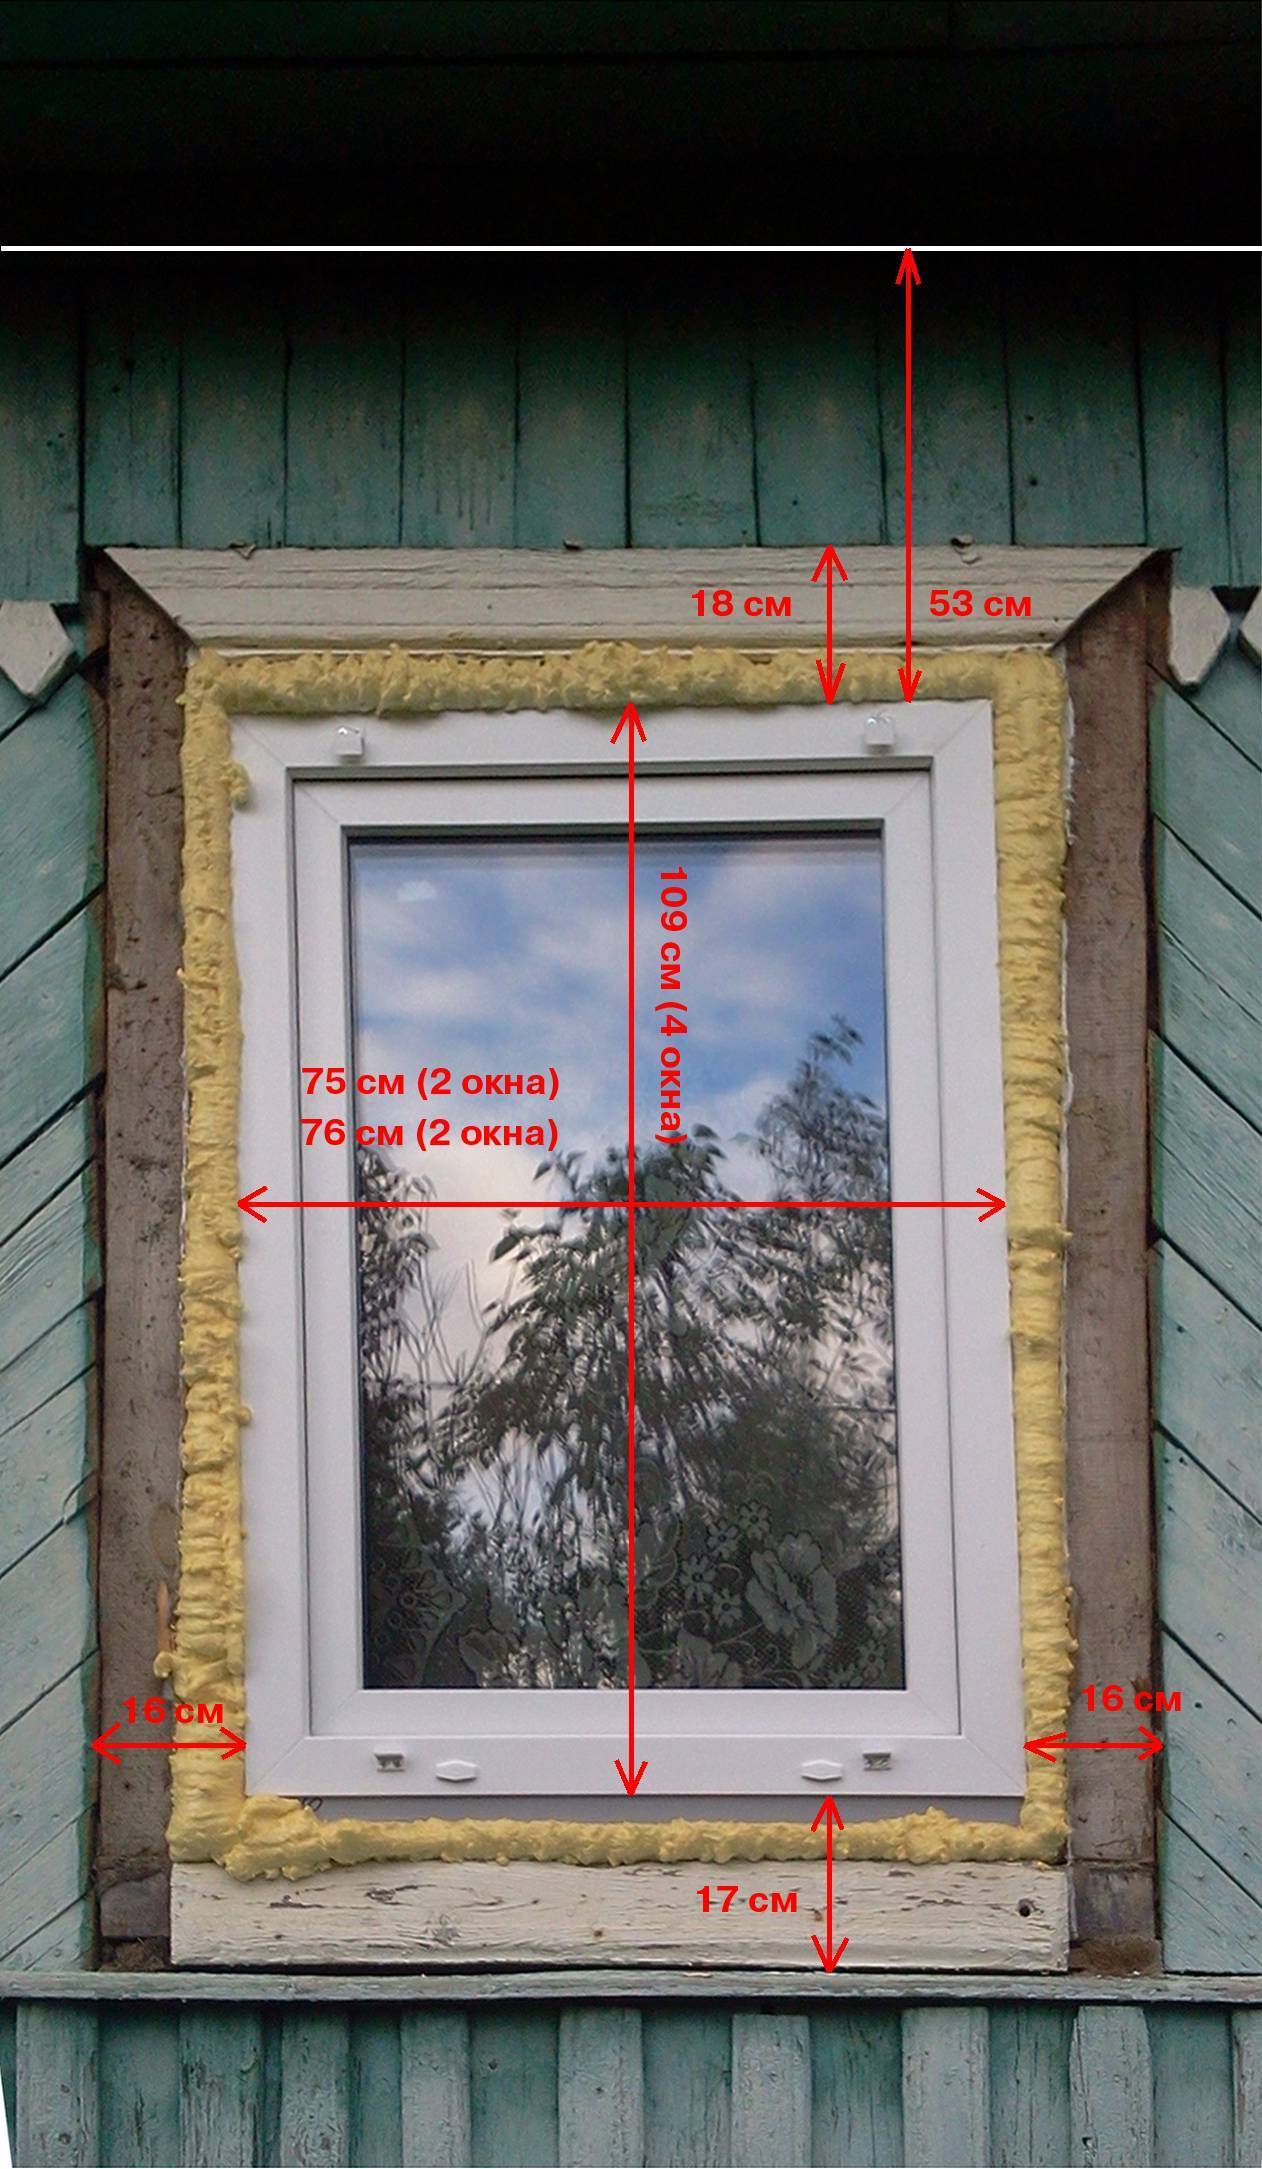 Только проверенные рекомендации по отделке откосов окна внутри и снаружи